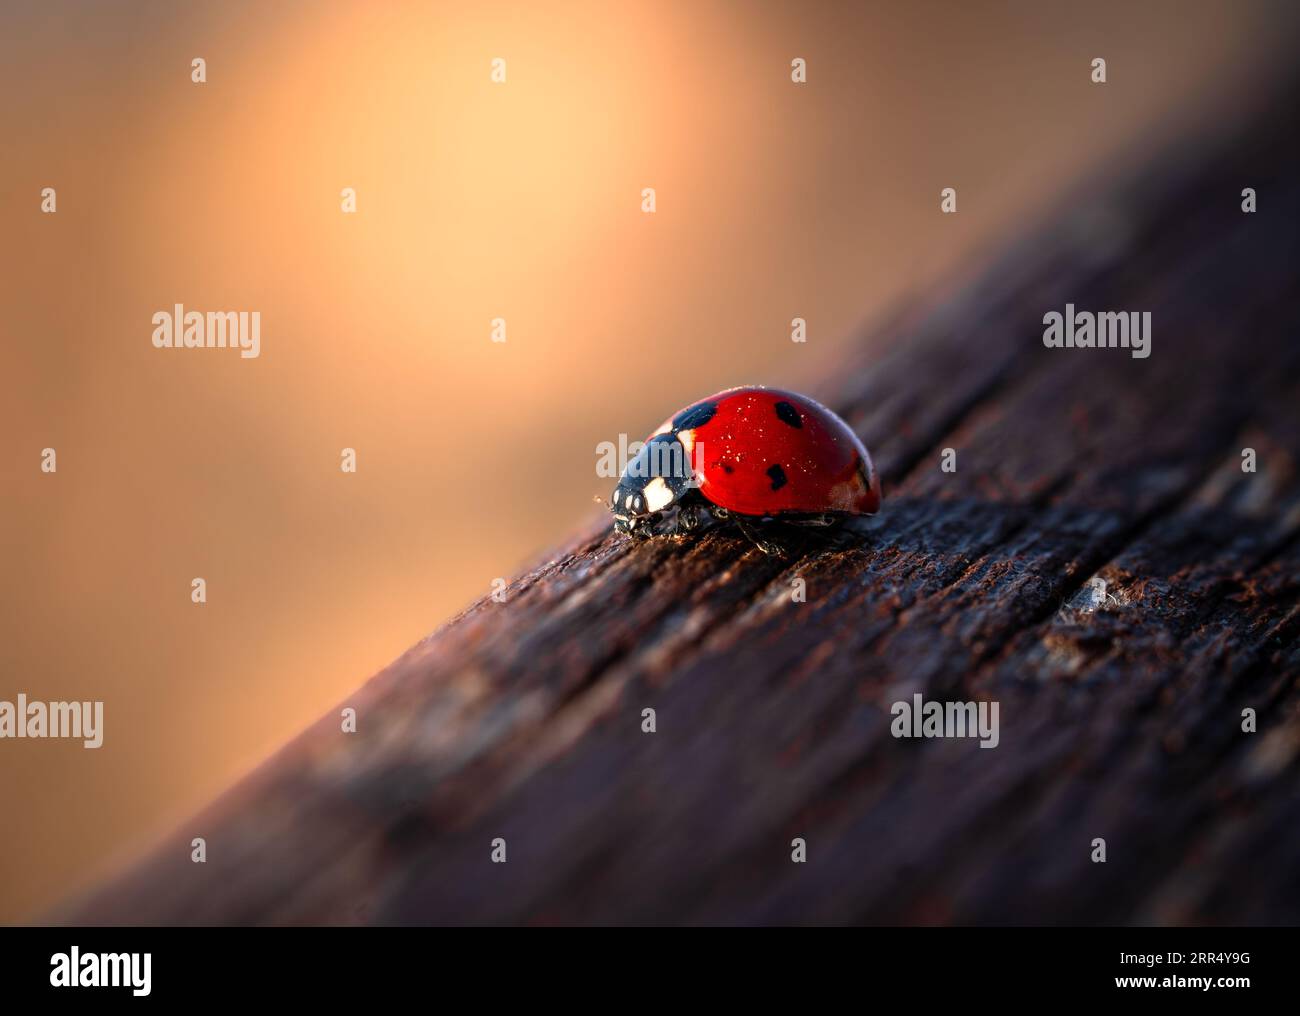 just a small ladybug enjoying the sunset Stock Photo